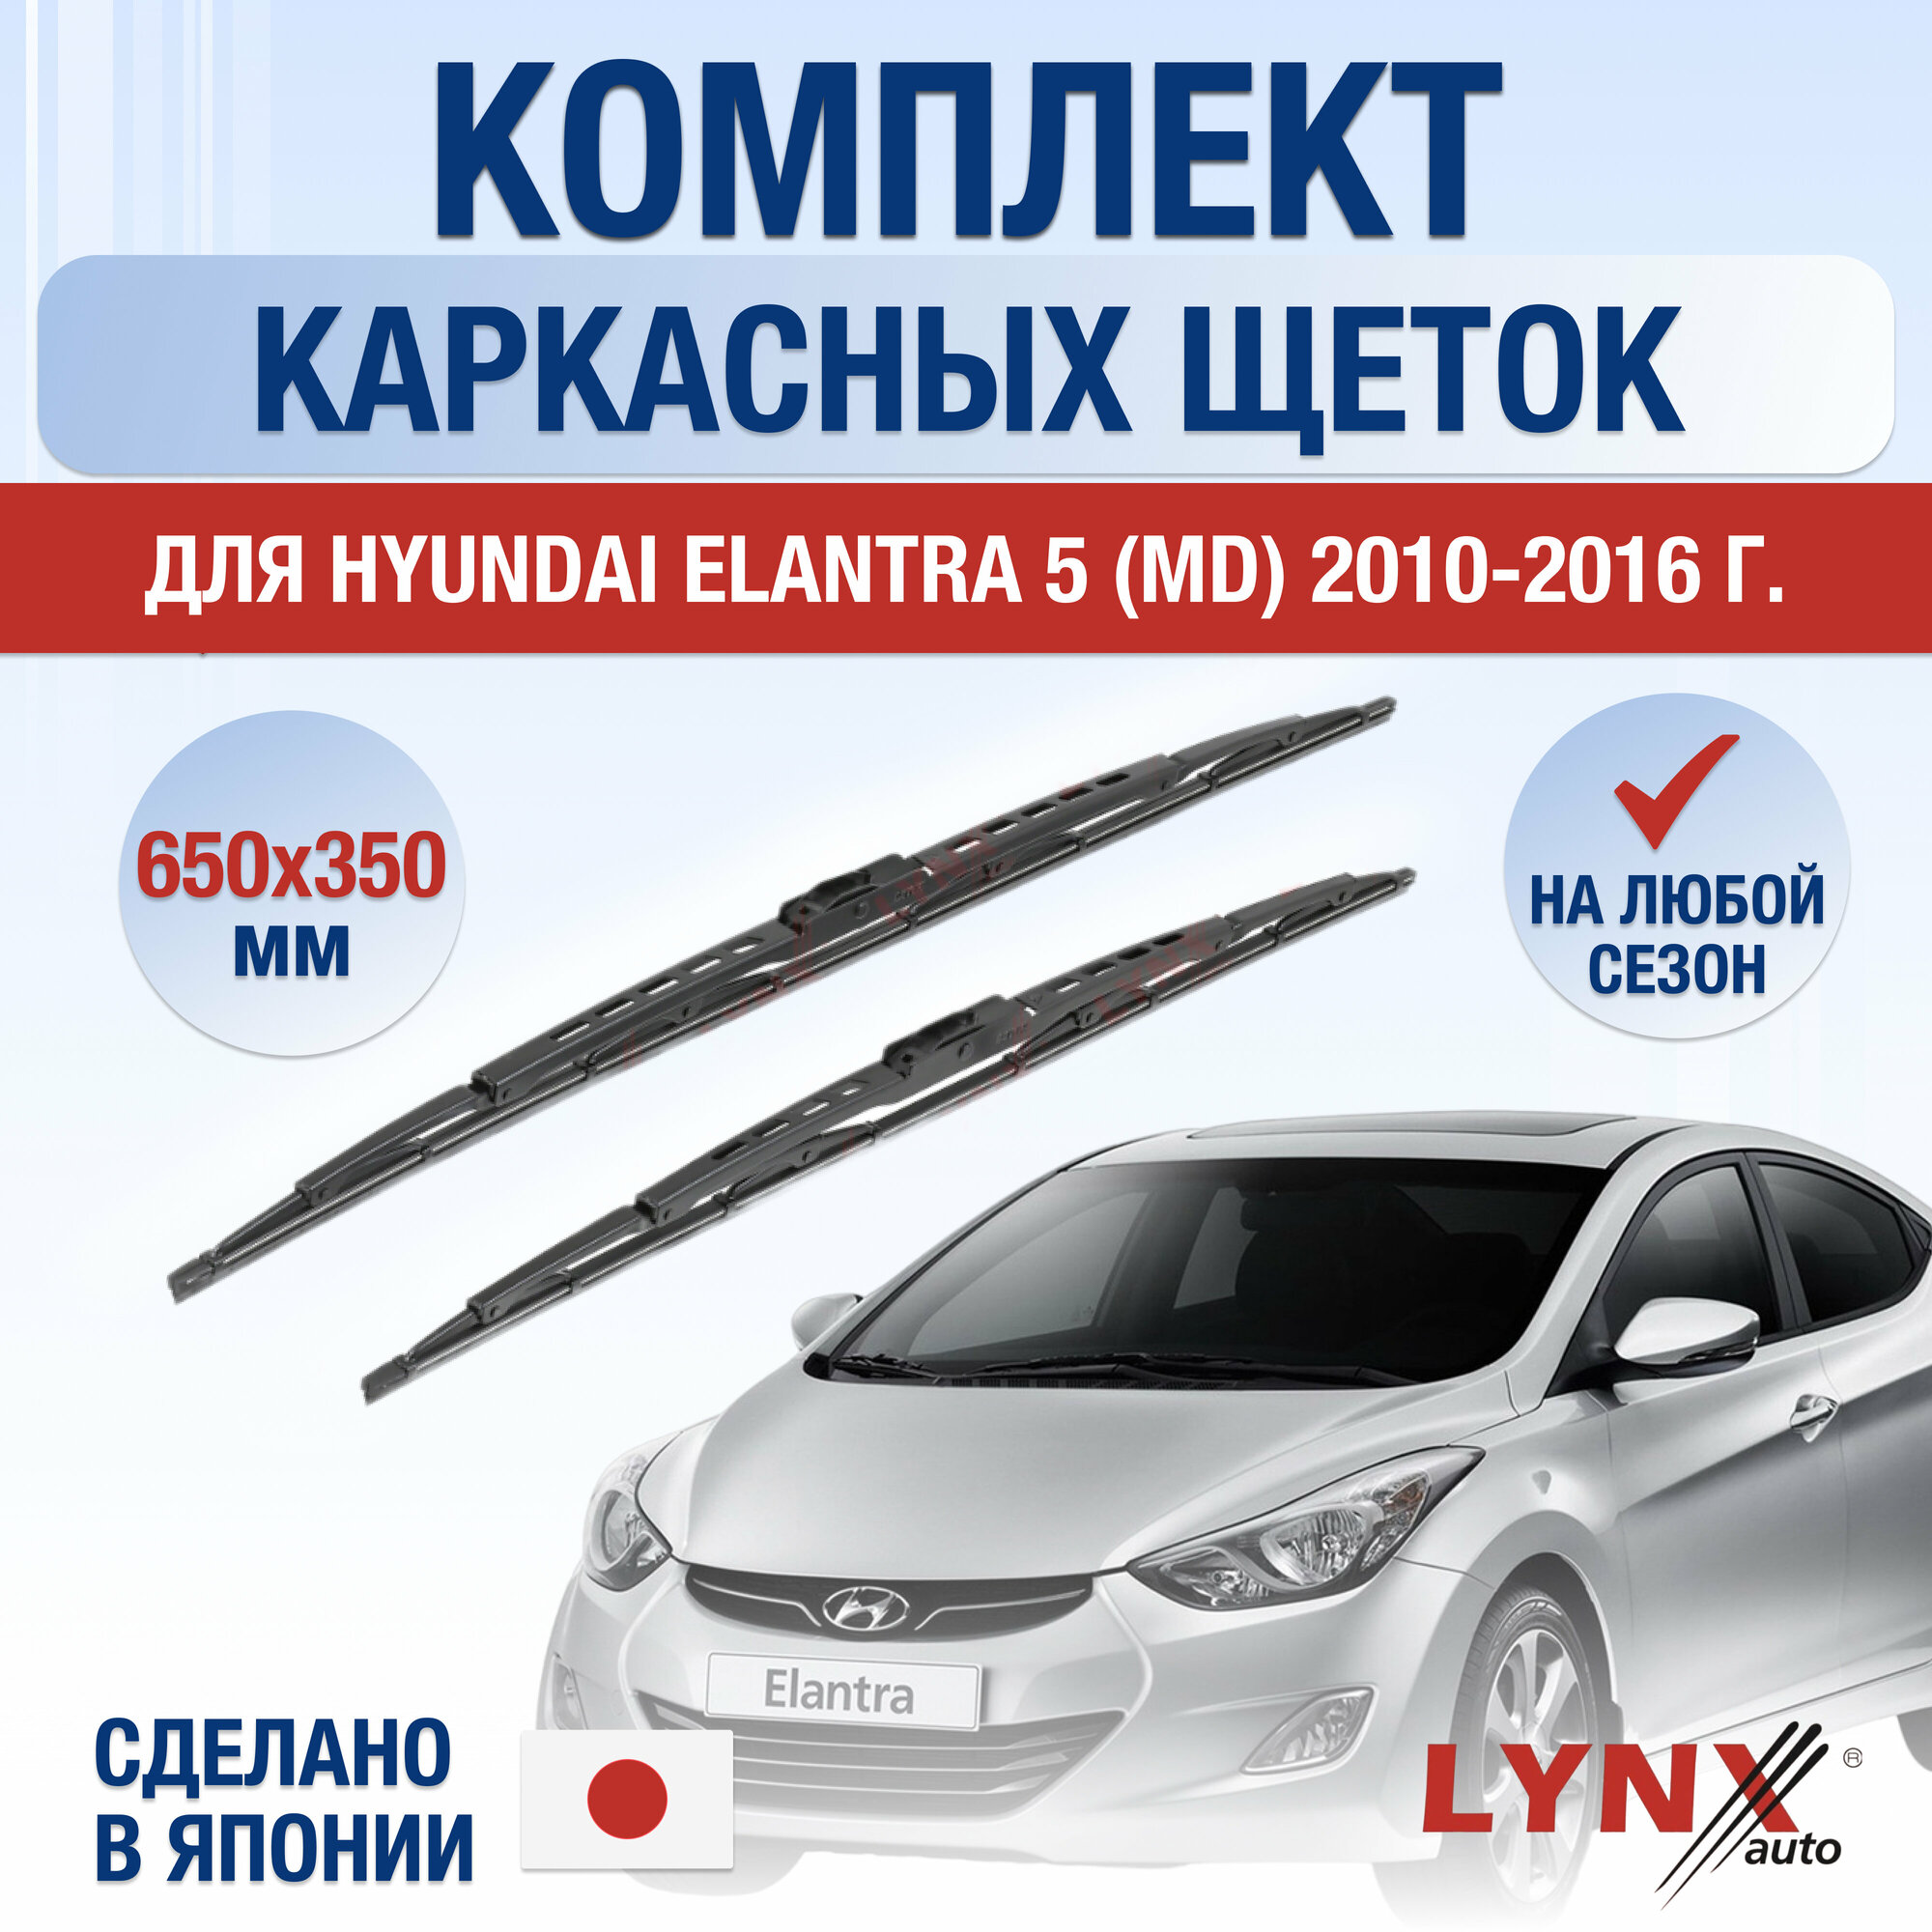 Щетки стеклоочистителя для Hyundai Elantra 5 (MD) / 2010 2011 2012 2013 2014 2015 2016 / Комплект каркасных дворников 650 350 мм Хендай Элантра